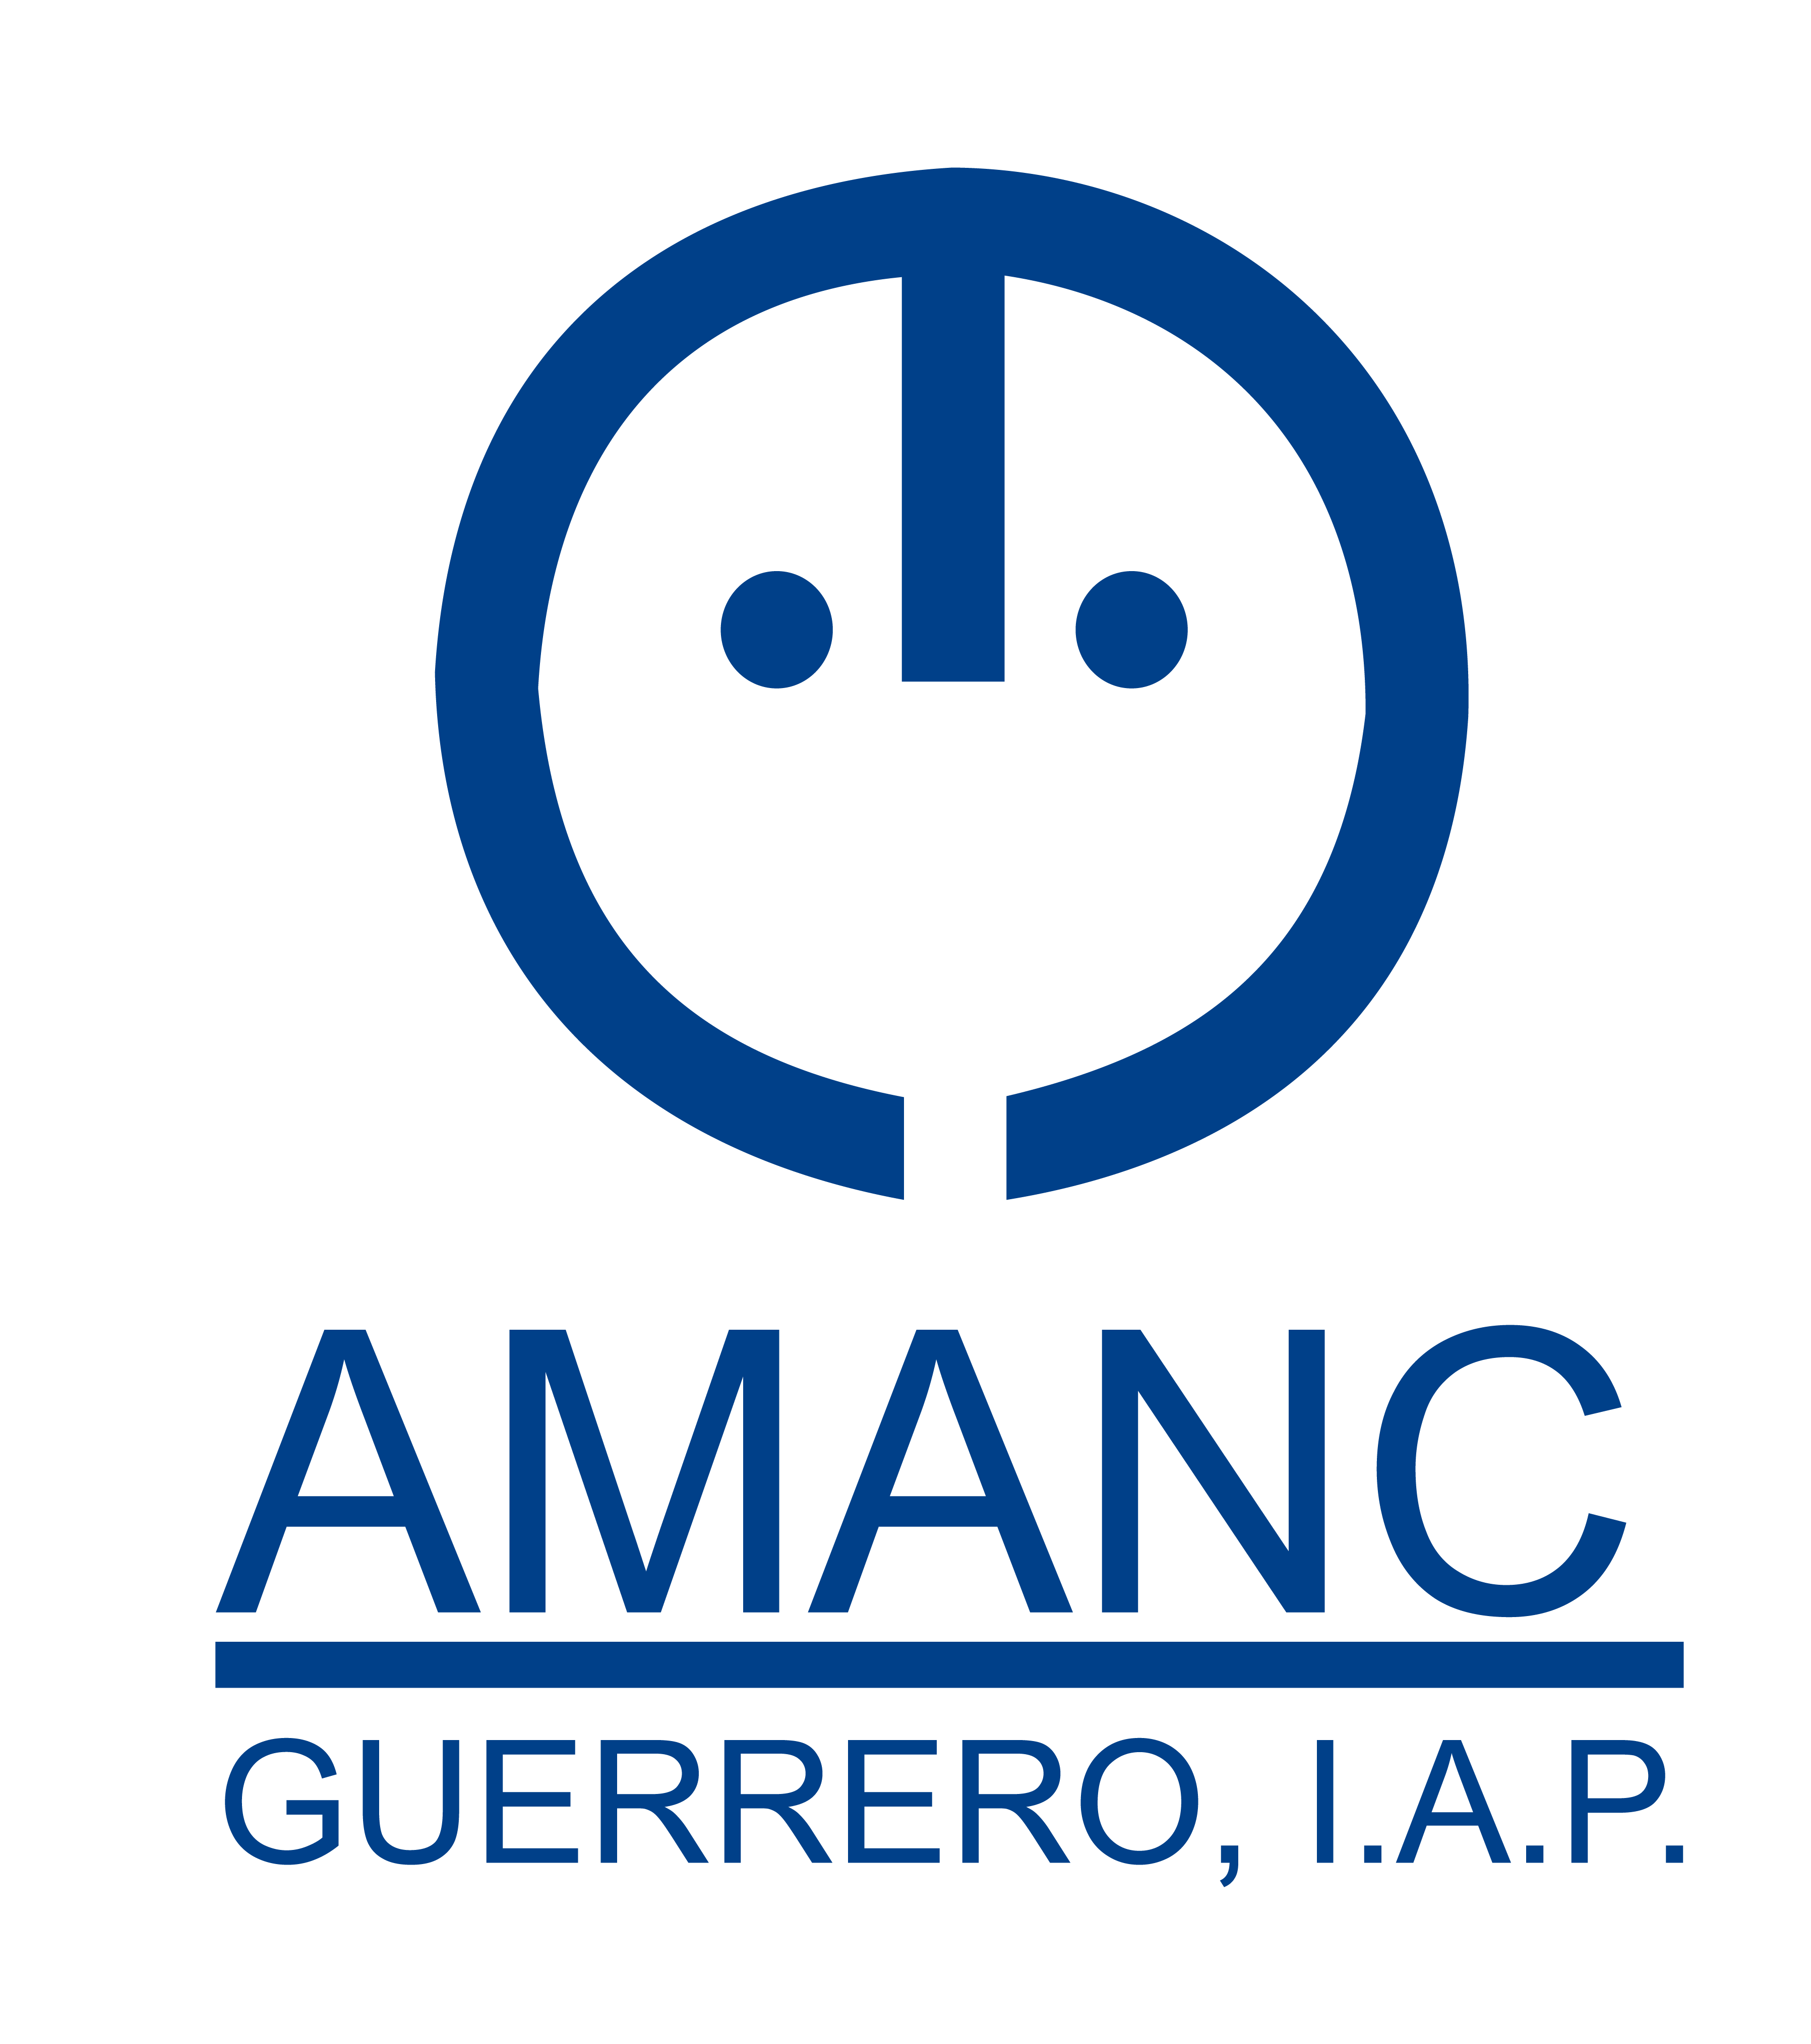 AMANC GUERRERO, I.A.P.